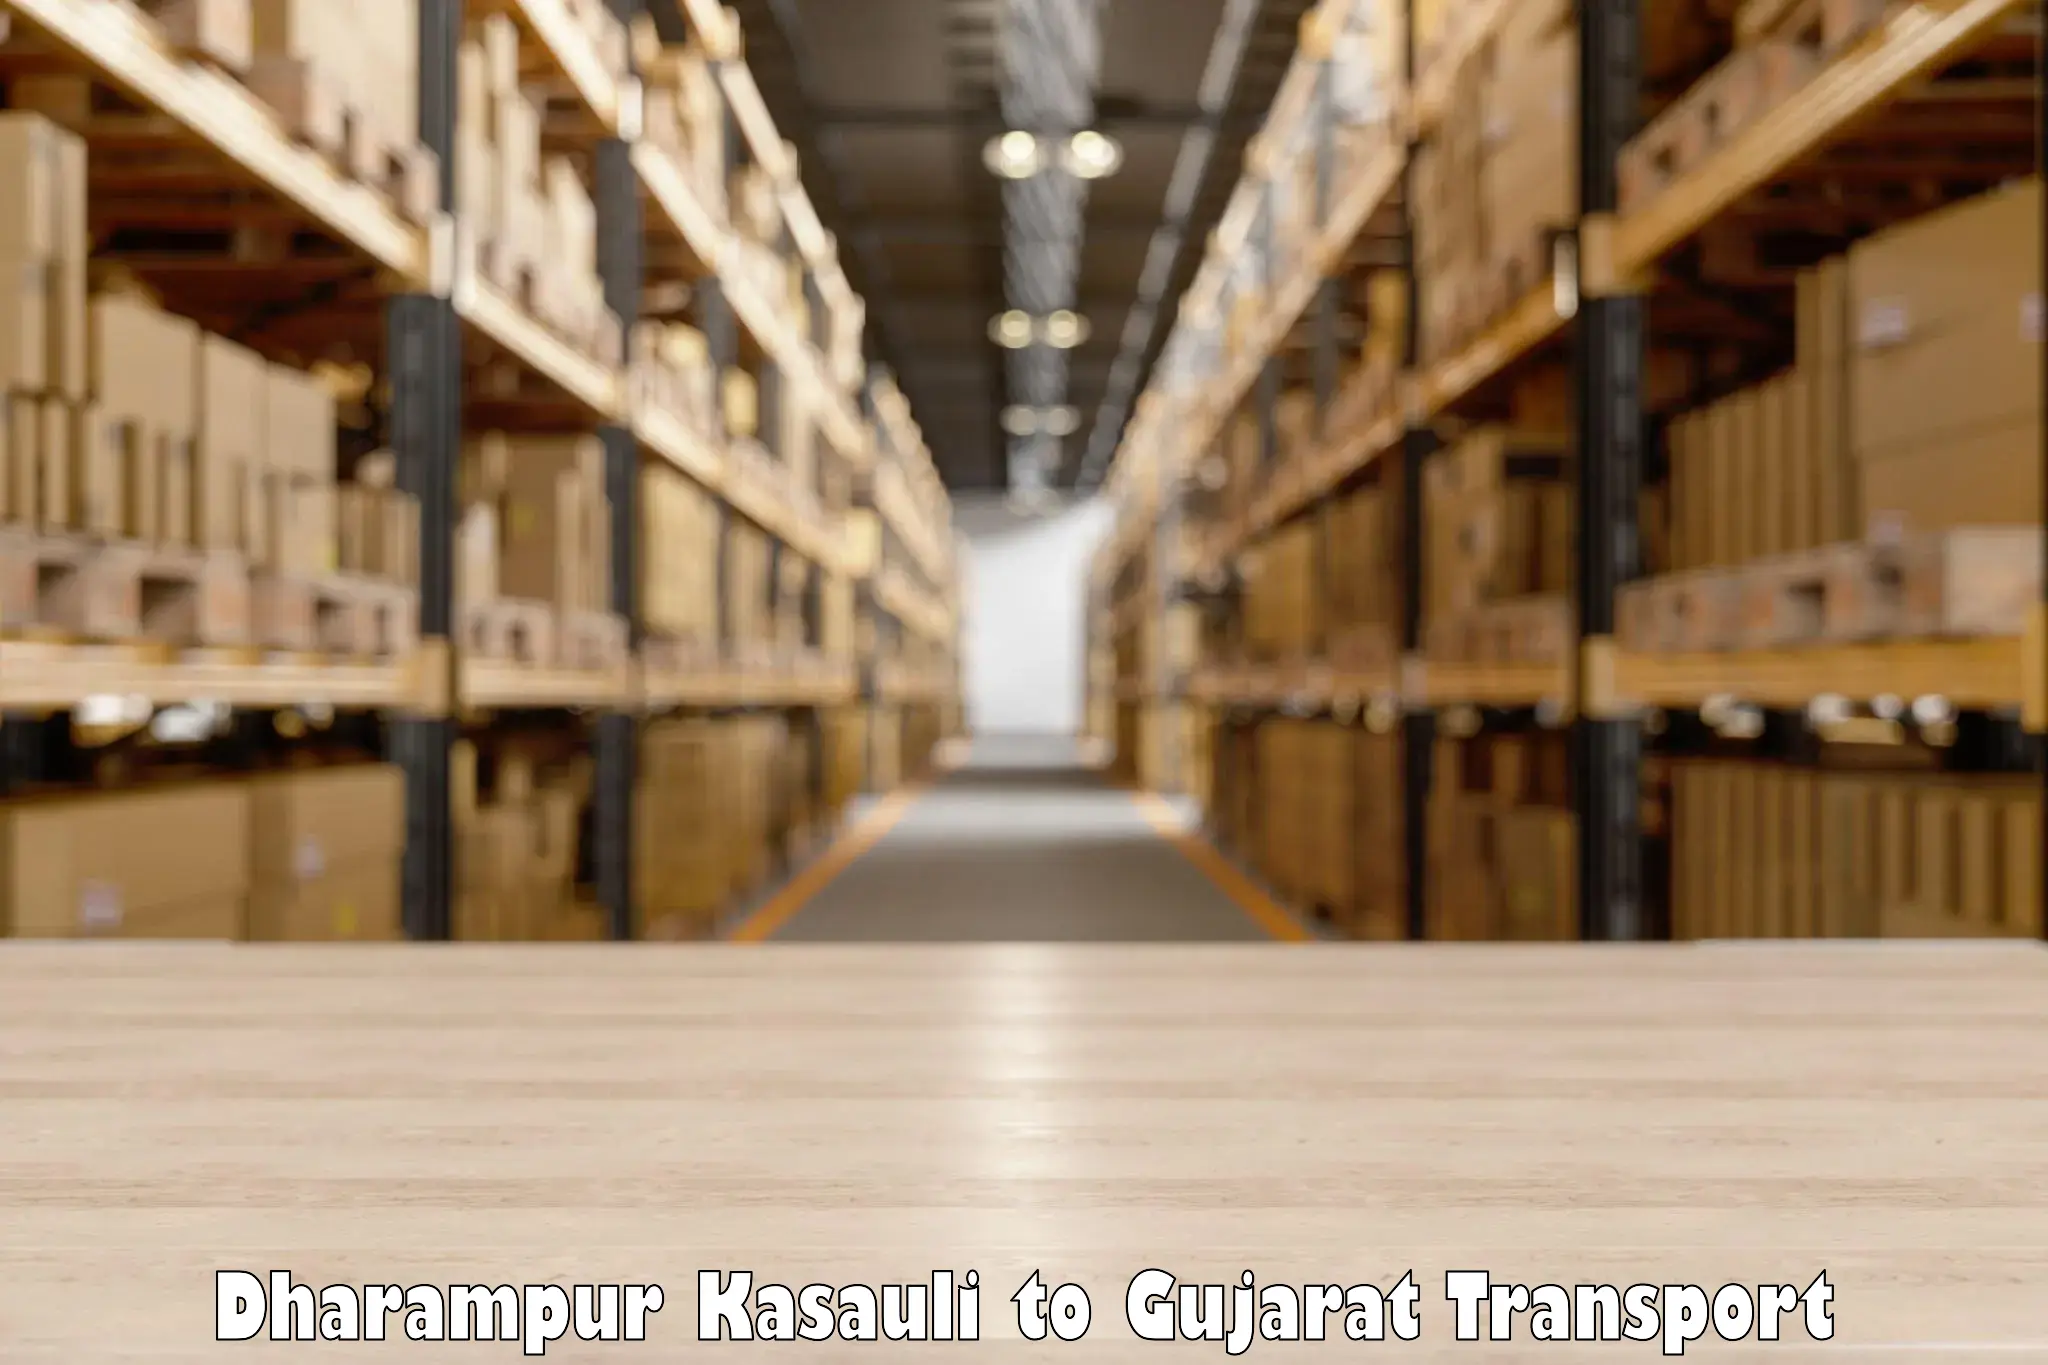 Daily parcel service transport Dharampur Kasauli to IIT Gandhi Nagar